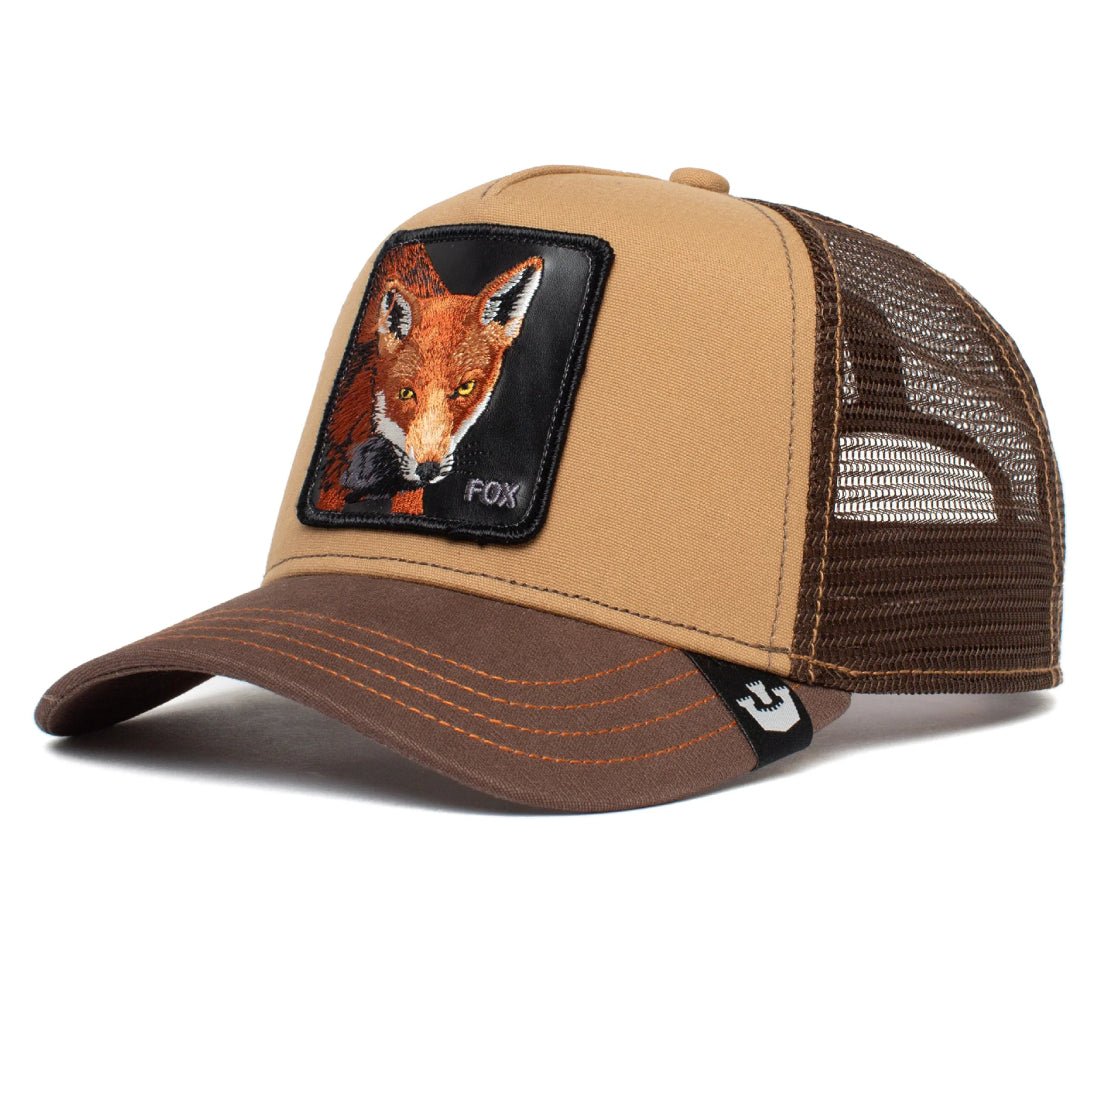 Queue Caps The Fox Cap - Brown - قبعة - Store 974 | ستور ٩٧٤